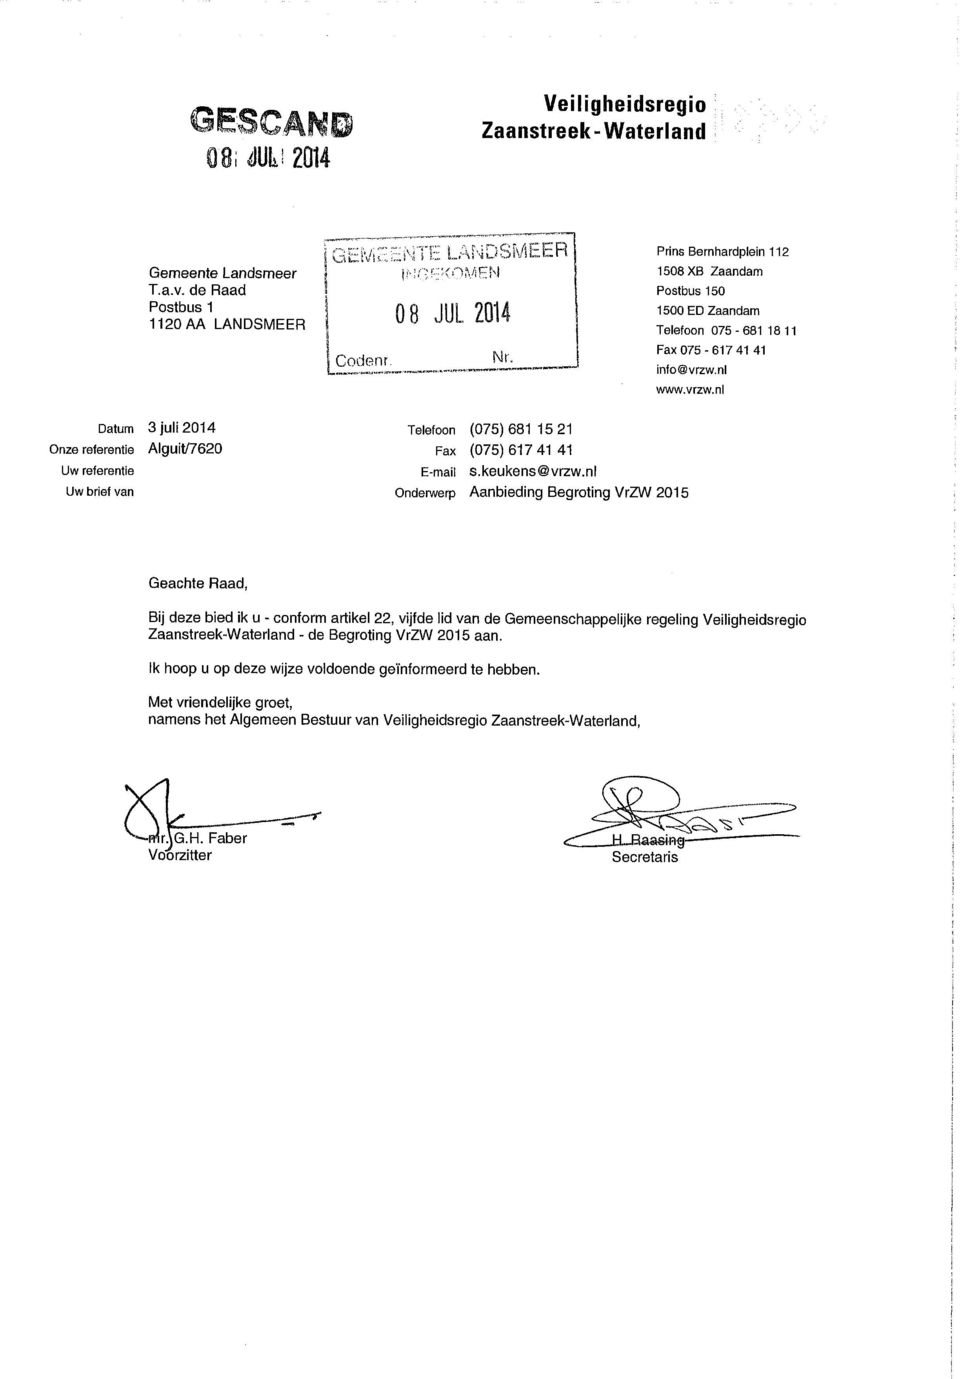 nl www.vrzw.nl Datum 3 juli 2014 nze referentie Alguit/7620 Uw referentie Uw brief van Telefoon (075) 681 15 21 Fax (075)617 41 41 E-mail s.keukens@vrzw.